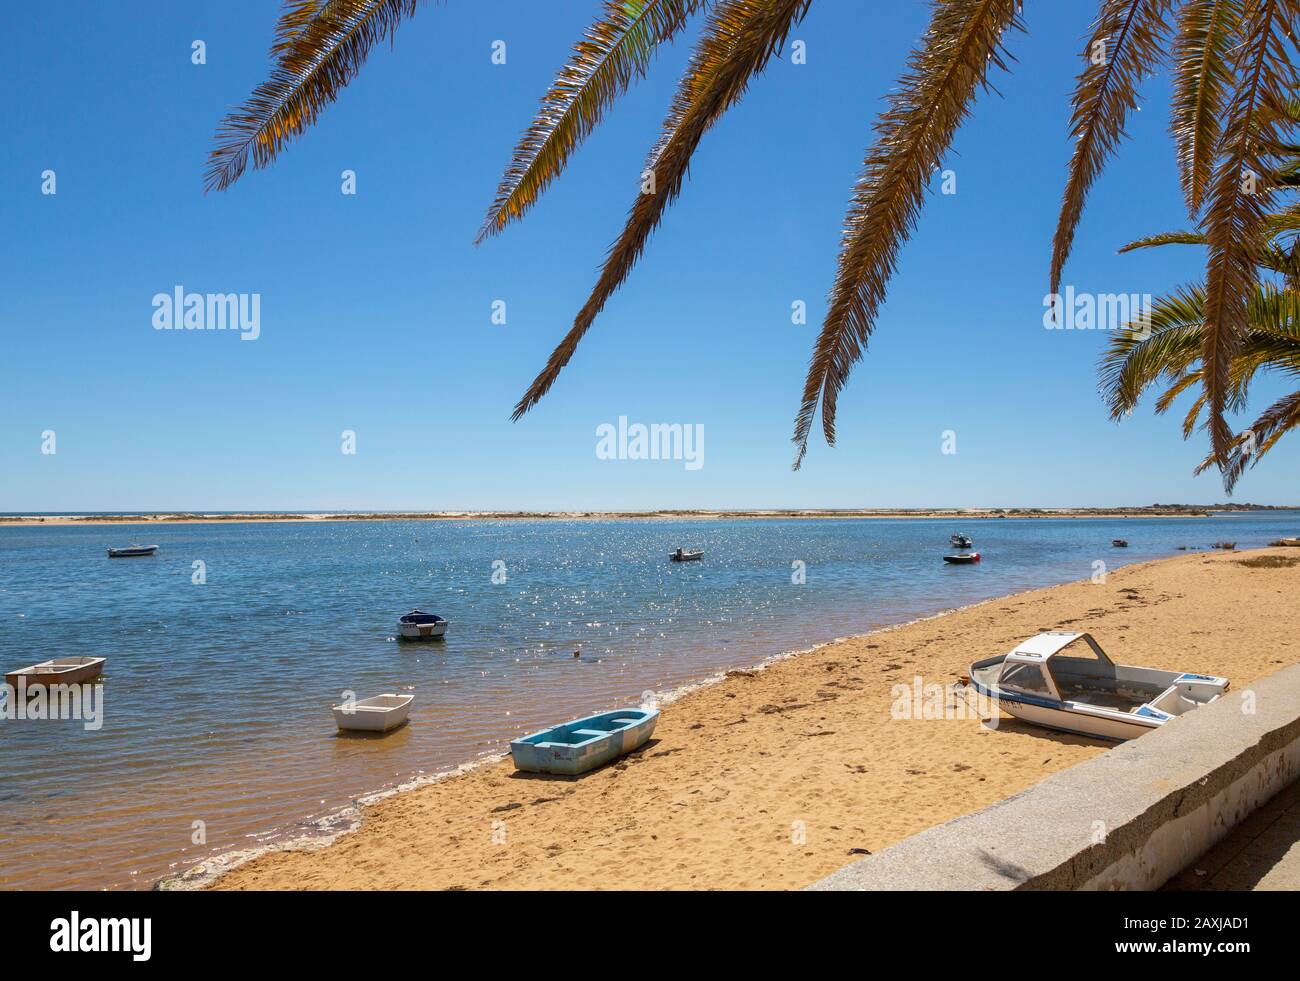 Spiaggia di sabbia e laguna dietro sandbar offshore, Vila Nova de Cacela, Algarve, Portogallo, Europa meridionale - Parco Naturale Ria Formosa Foto Stock